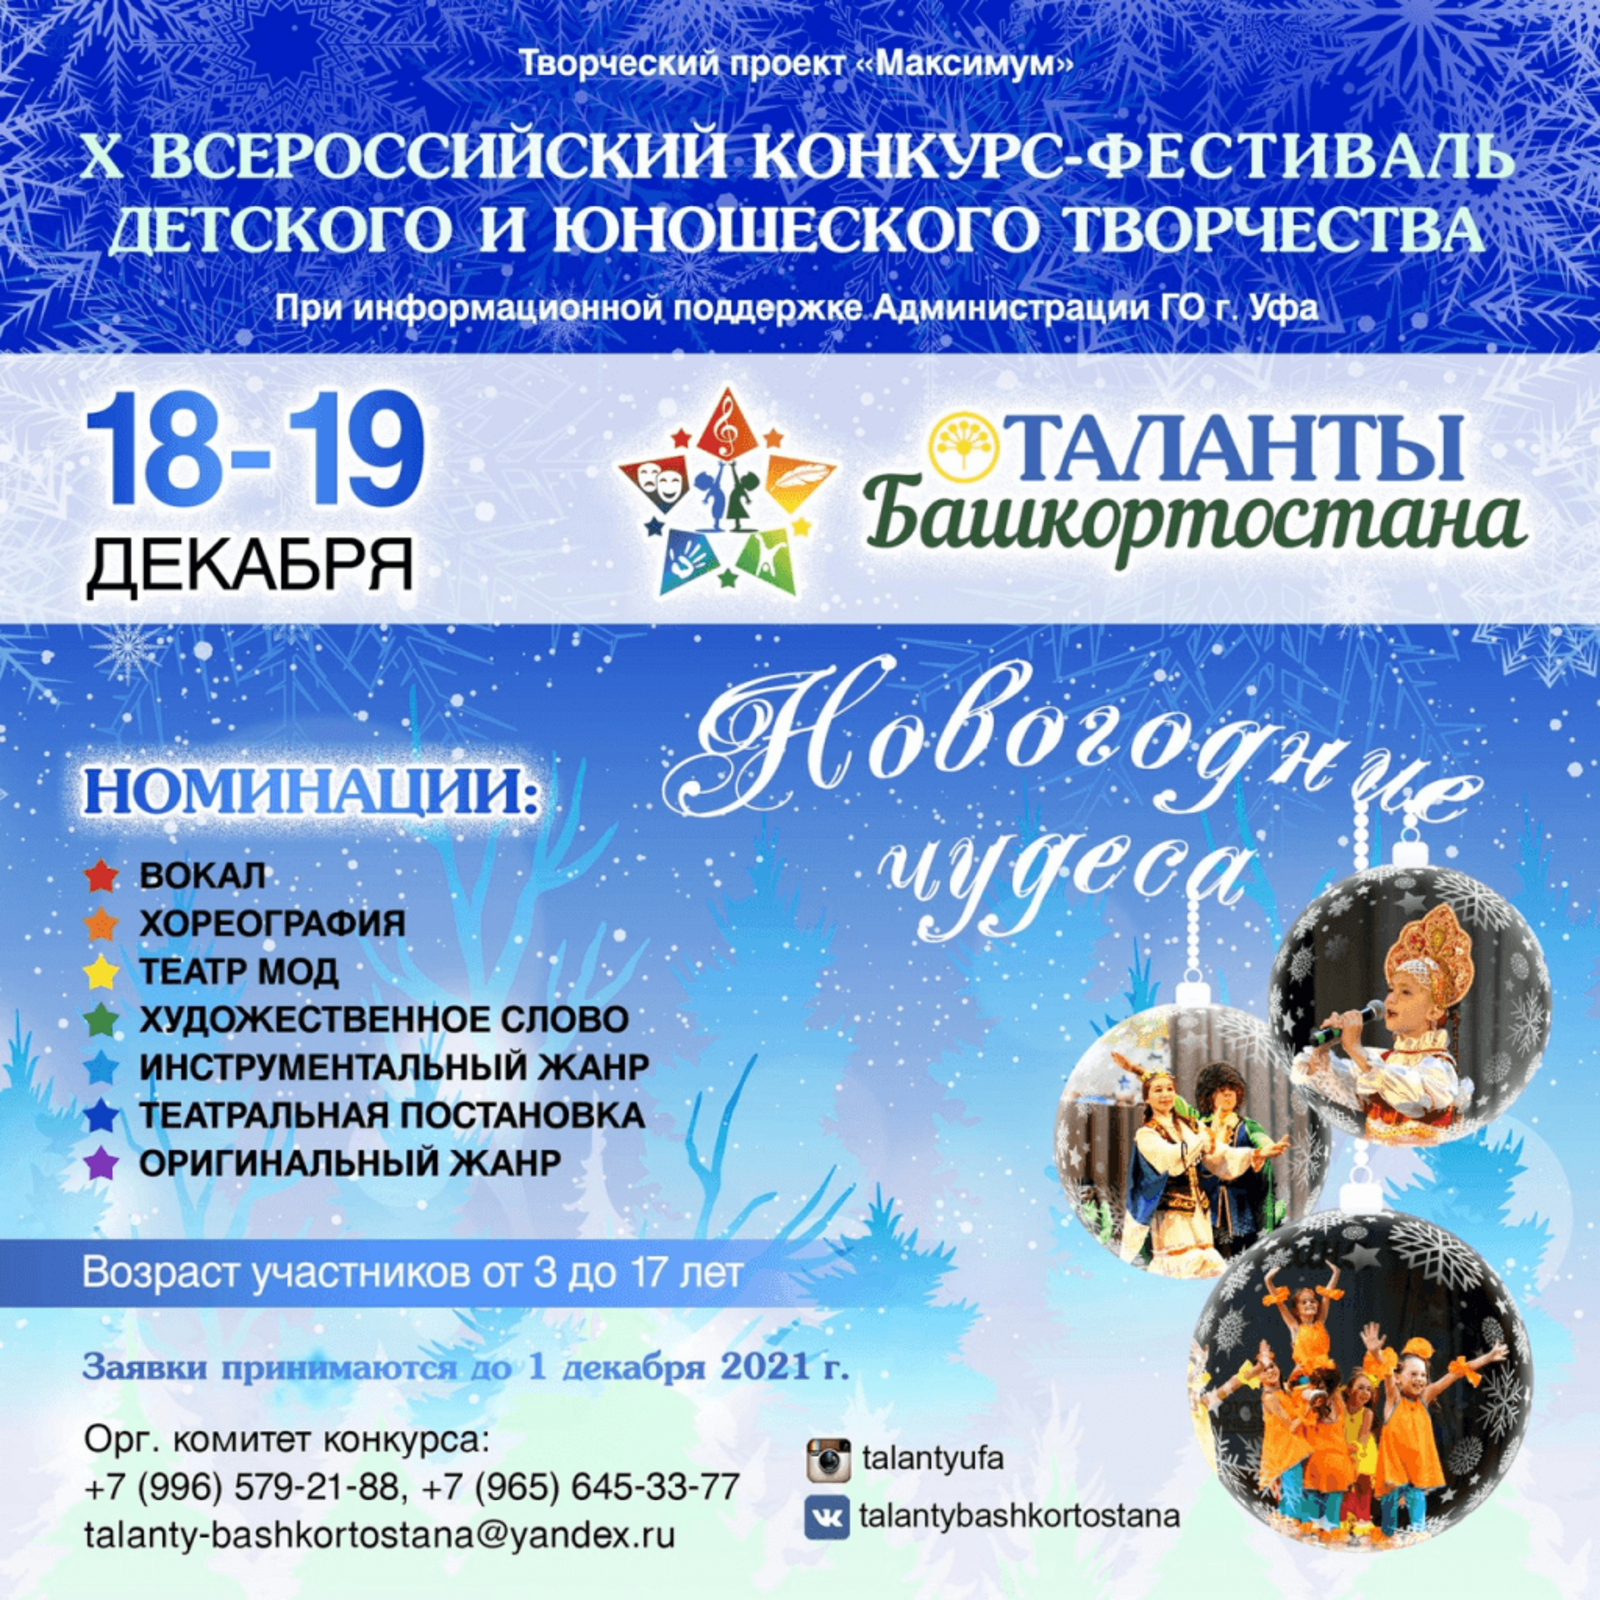 Приглашаем принять участие в конкурсе «Таланты Башкортостана - Новогодние чудеса»